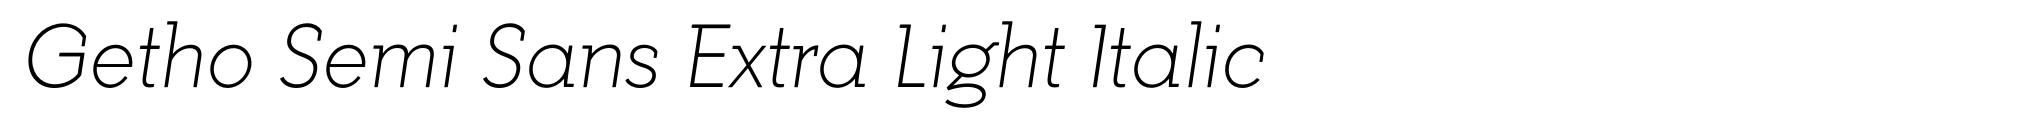 Getho Semi Sans Extra Light Italic image